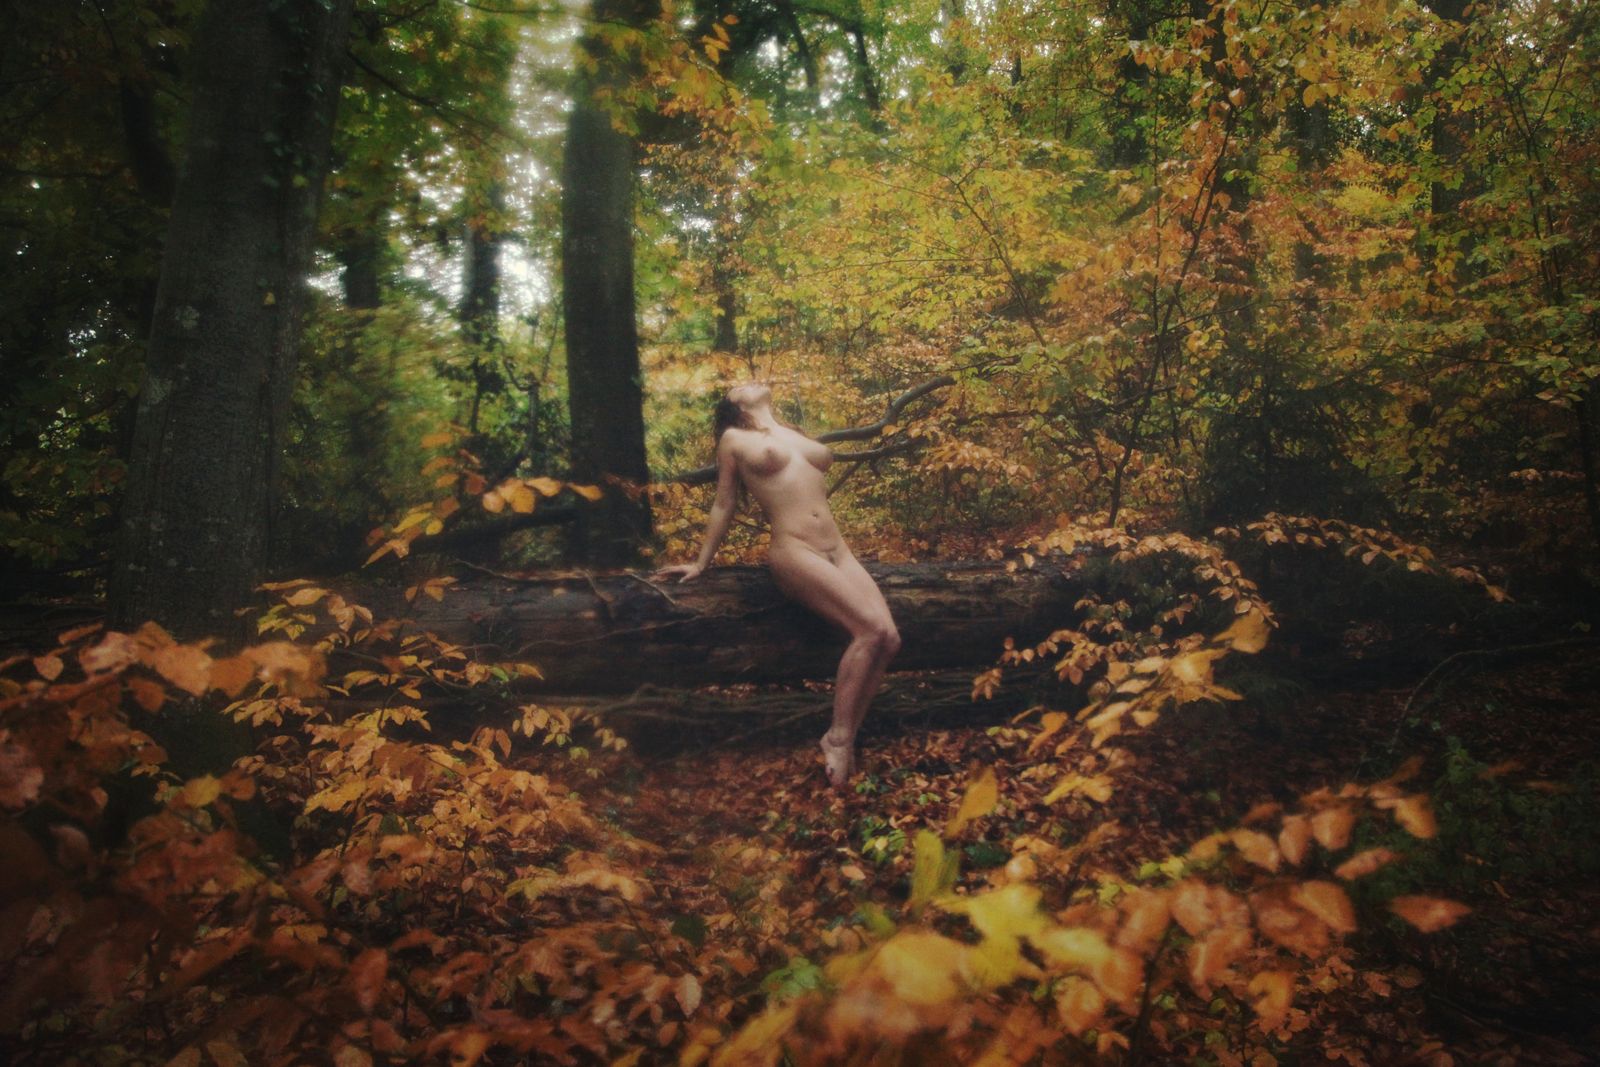 © Natalia Kovachevski - "Autumn Nymph" - Photographer and Model : Natalia Kovachevski